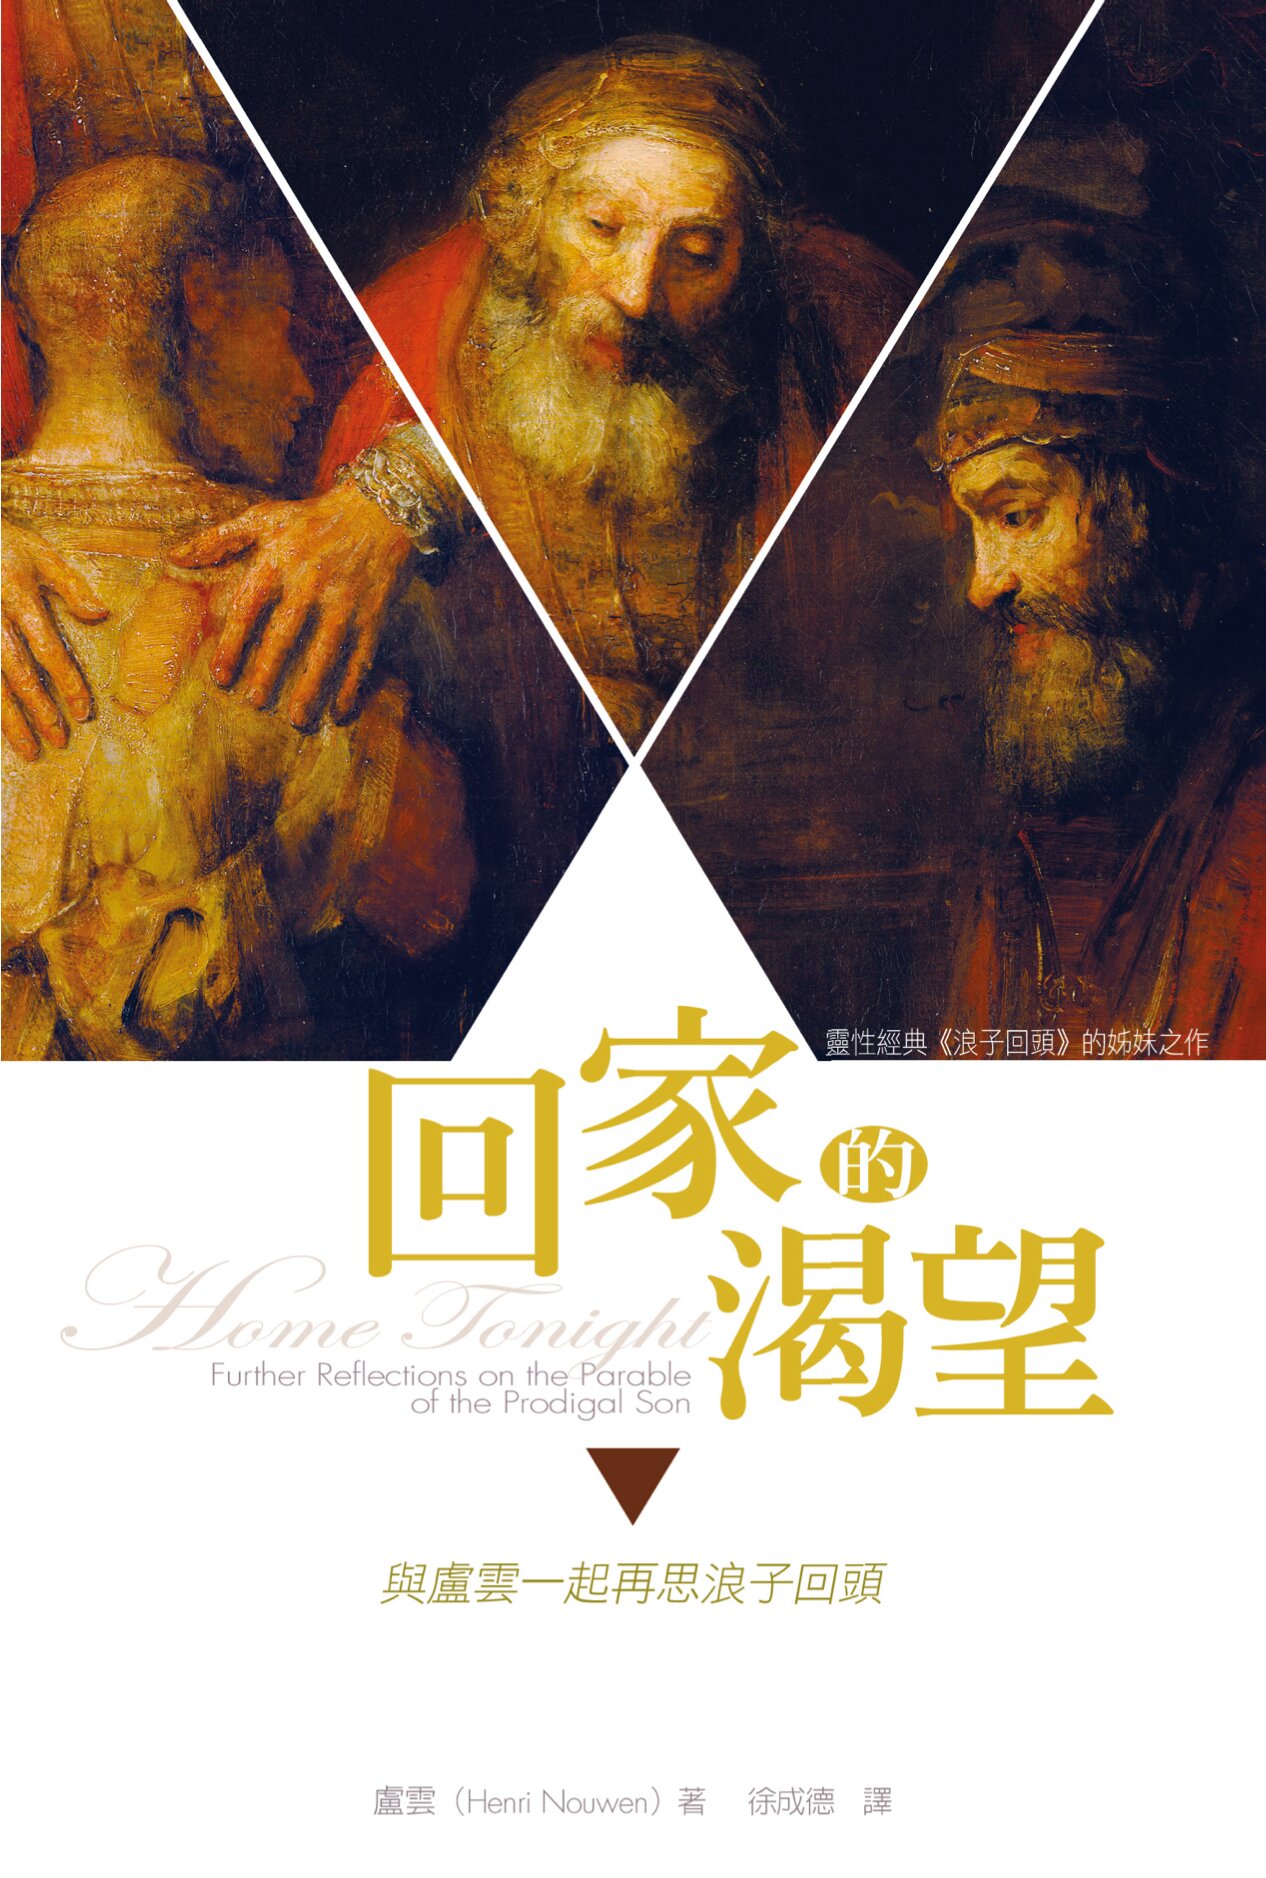 回家的渴望——與盧雲一起再思浪子回頭 (繁體) Home Tonight: Further Reflections on the Parable of the Prodigal Son (Traditional Chinese)